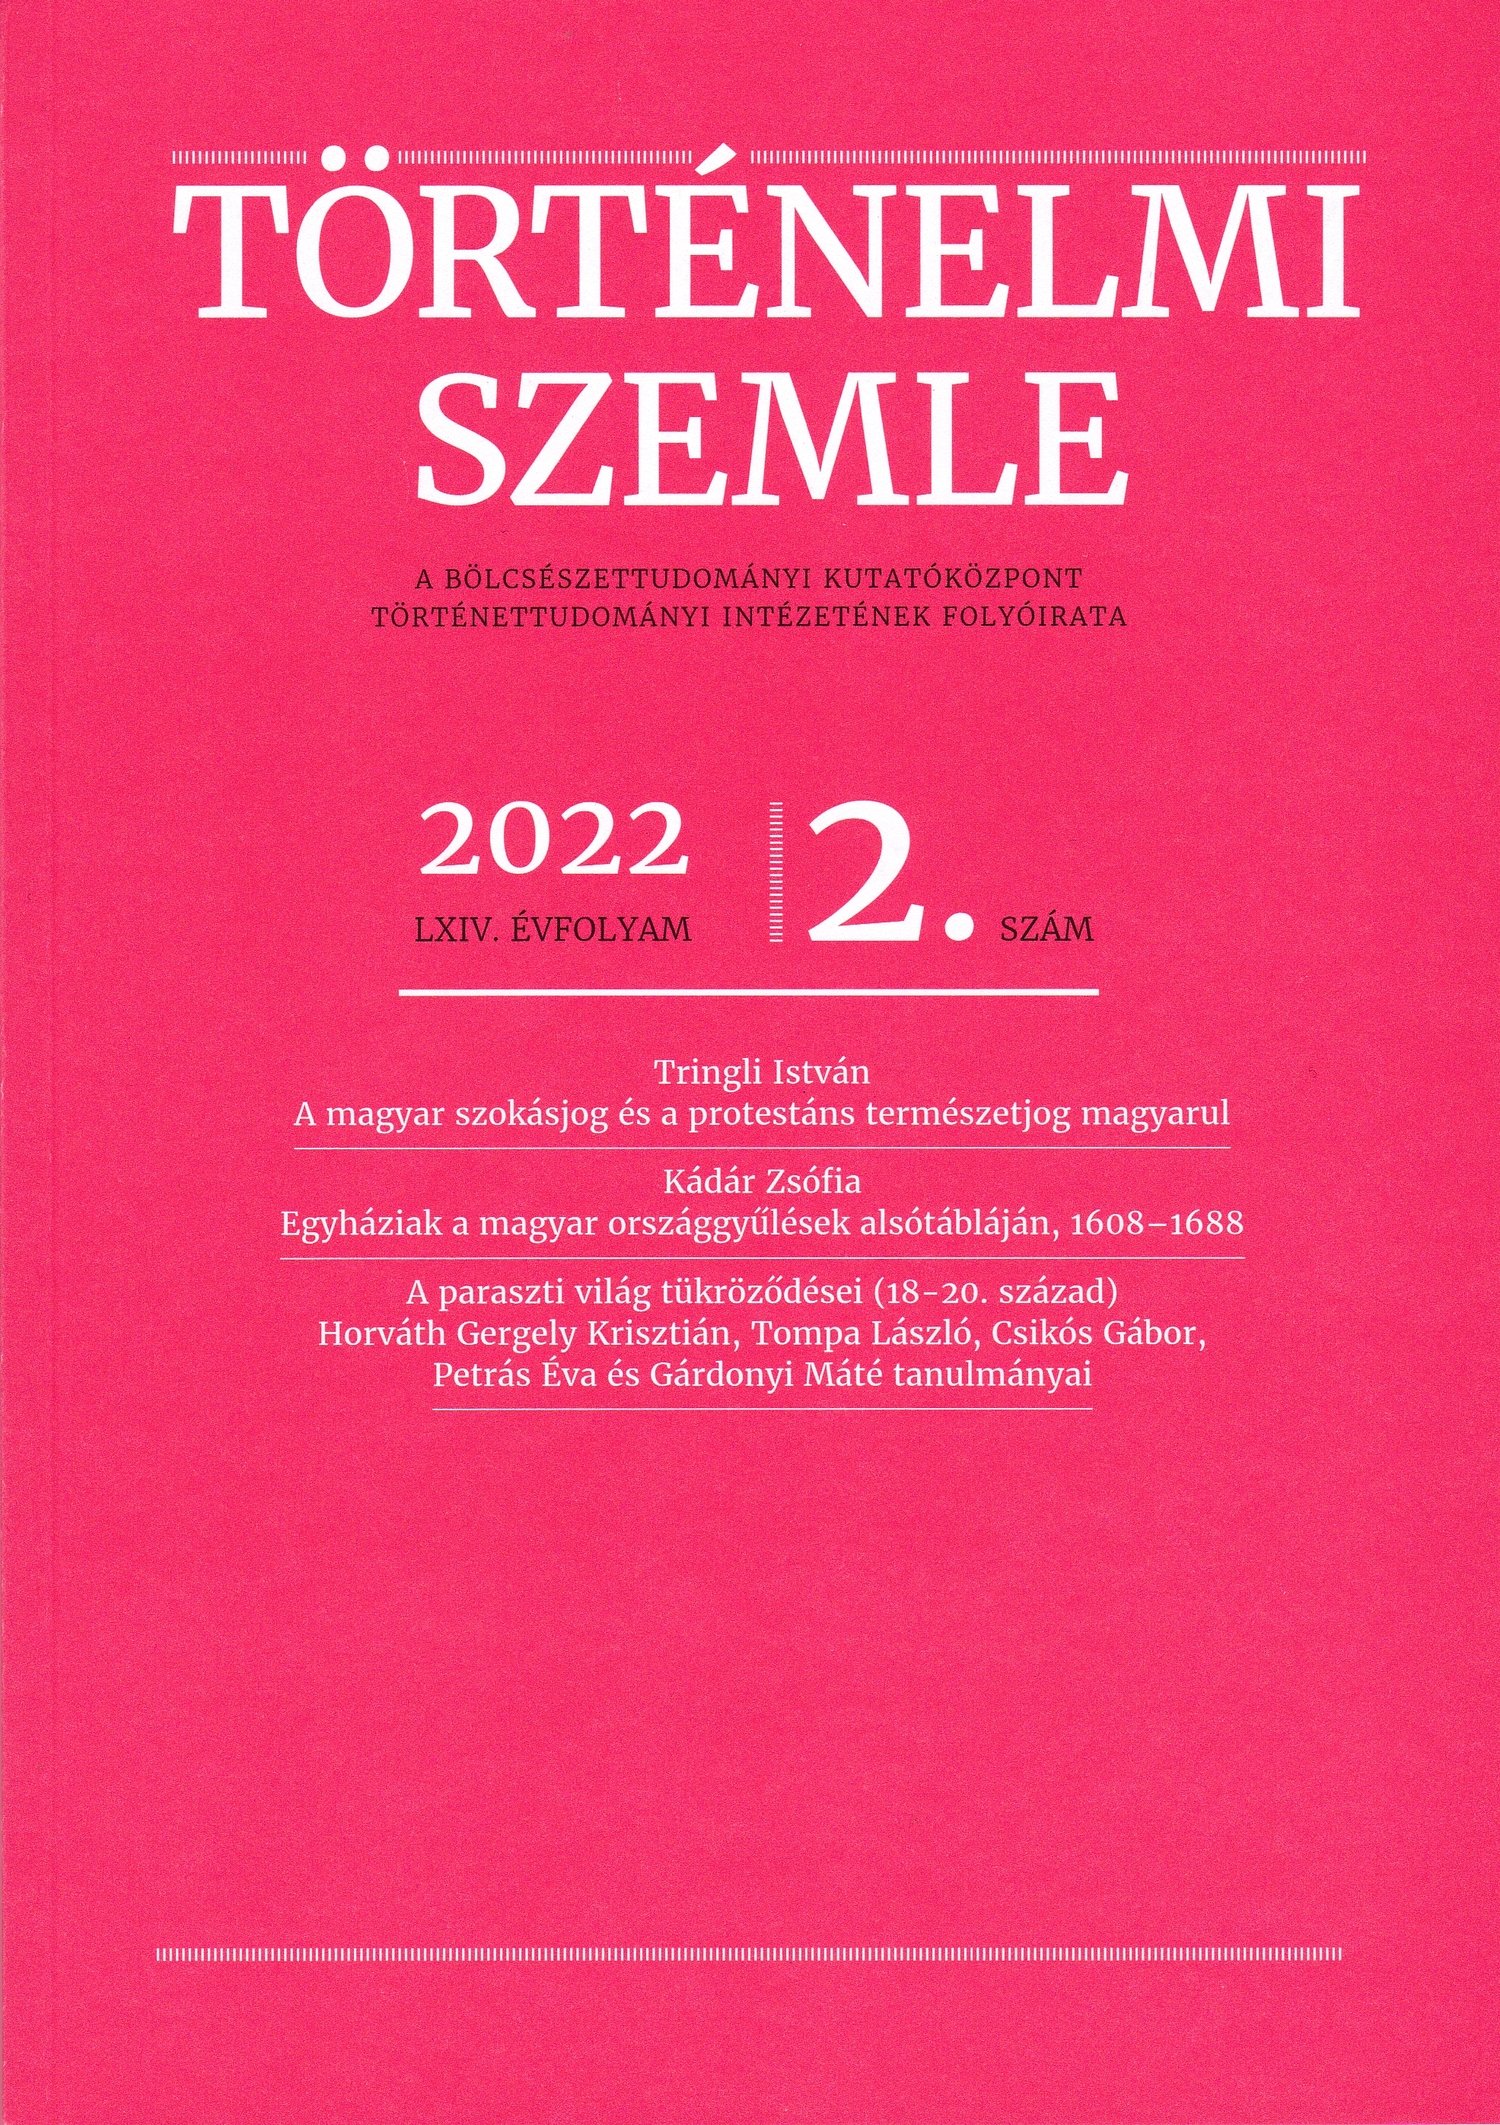 Történelmi Szemle 2022/64. évf. 2. sz. (Rippl-Rónai Múzeum CC BY-NC-ND)